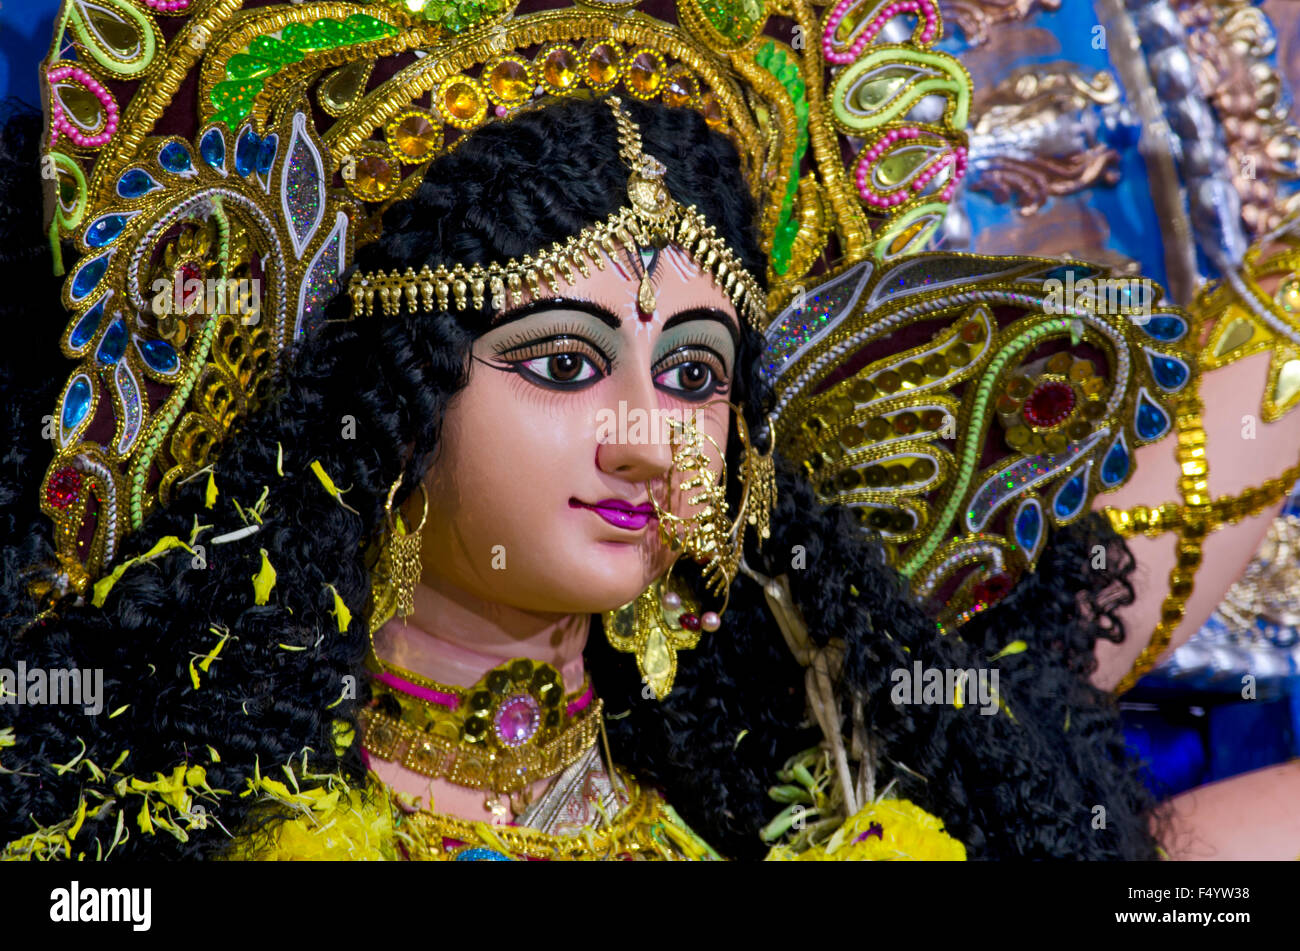 Durga Puja at Chennai, Madras, Tamil Nadu, India, Asia Stock Photo